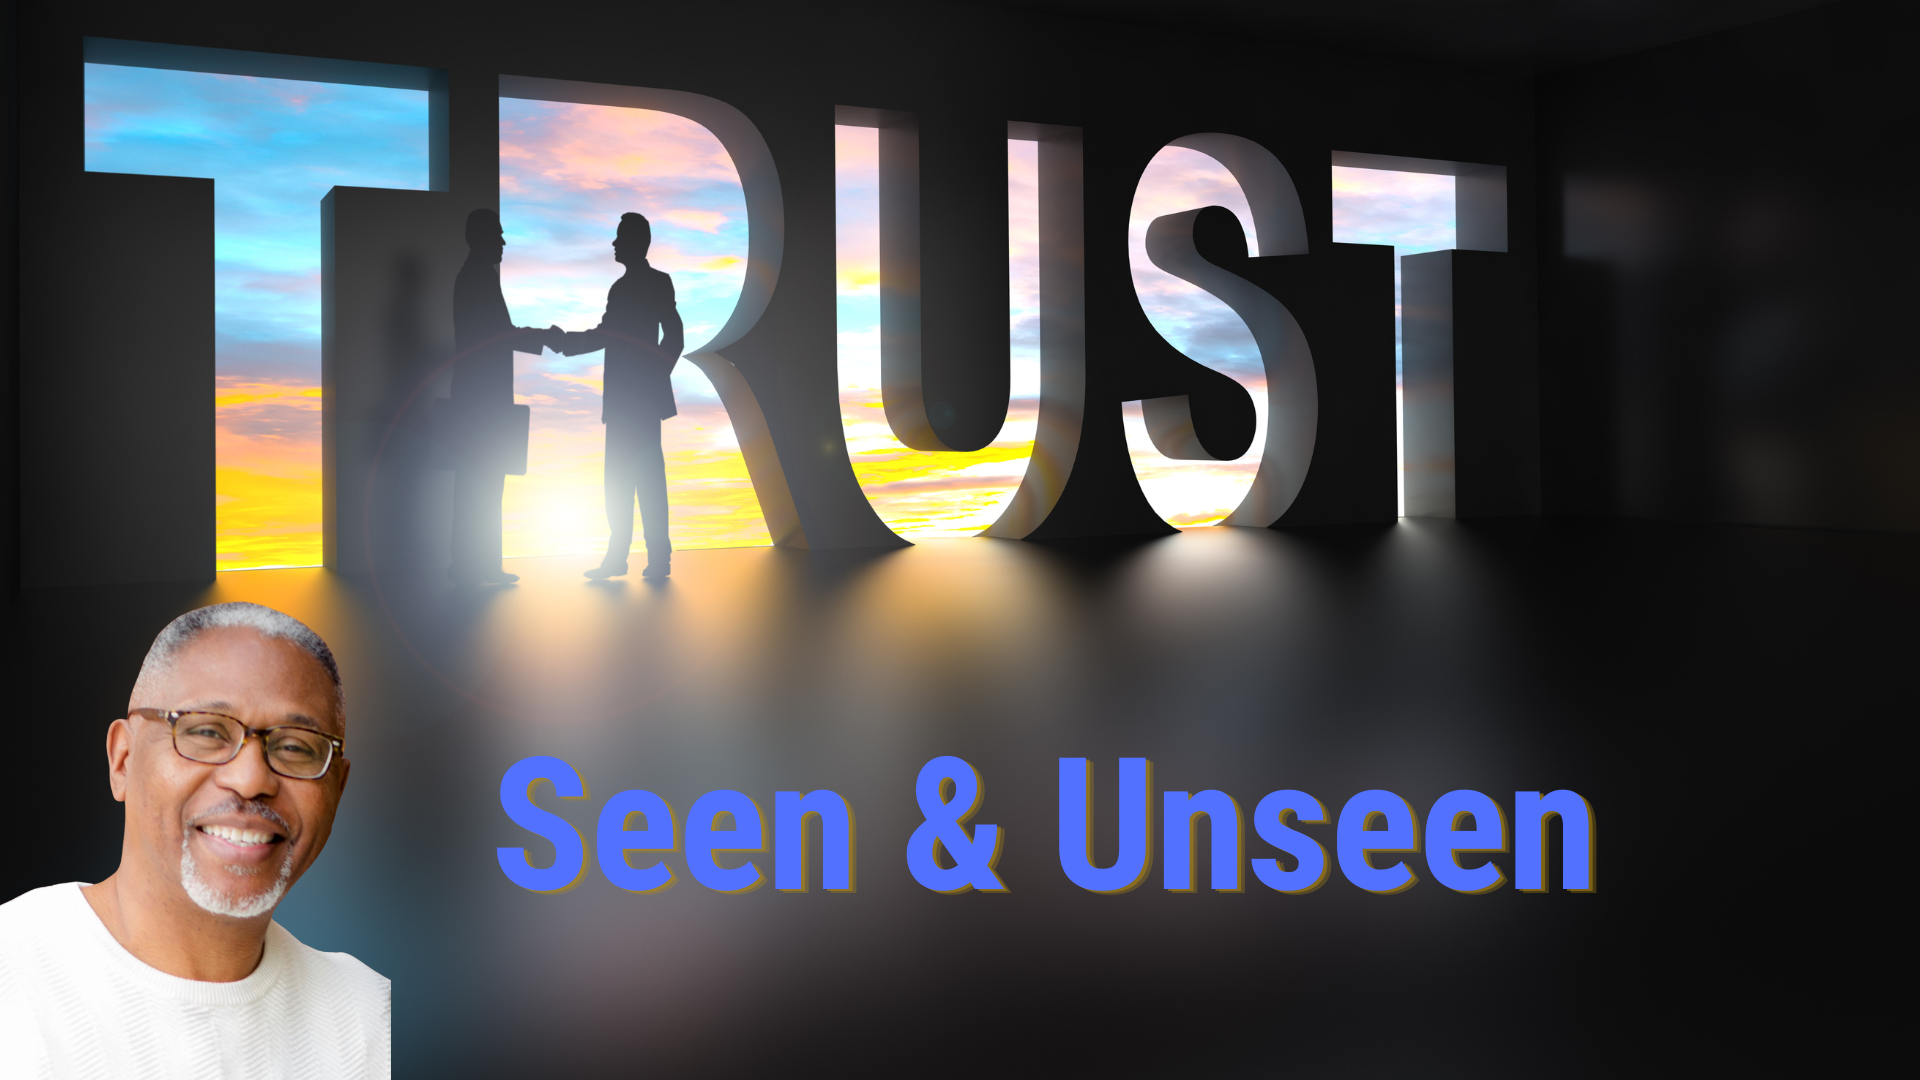 Seen & Unseen blog featured image